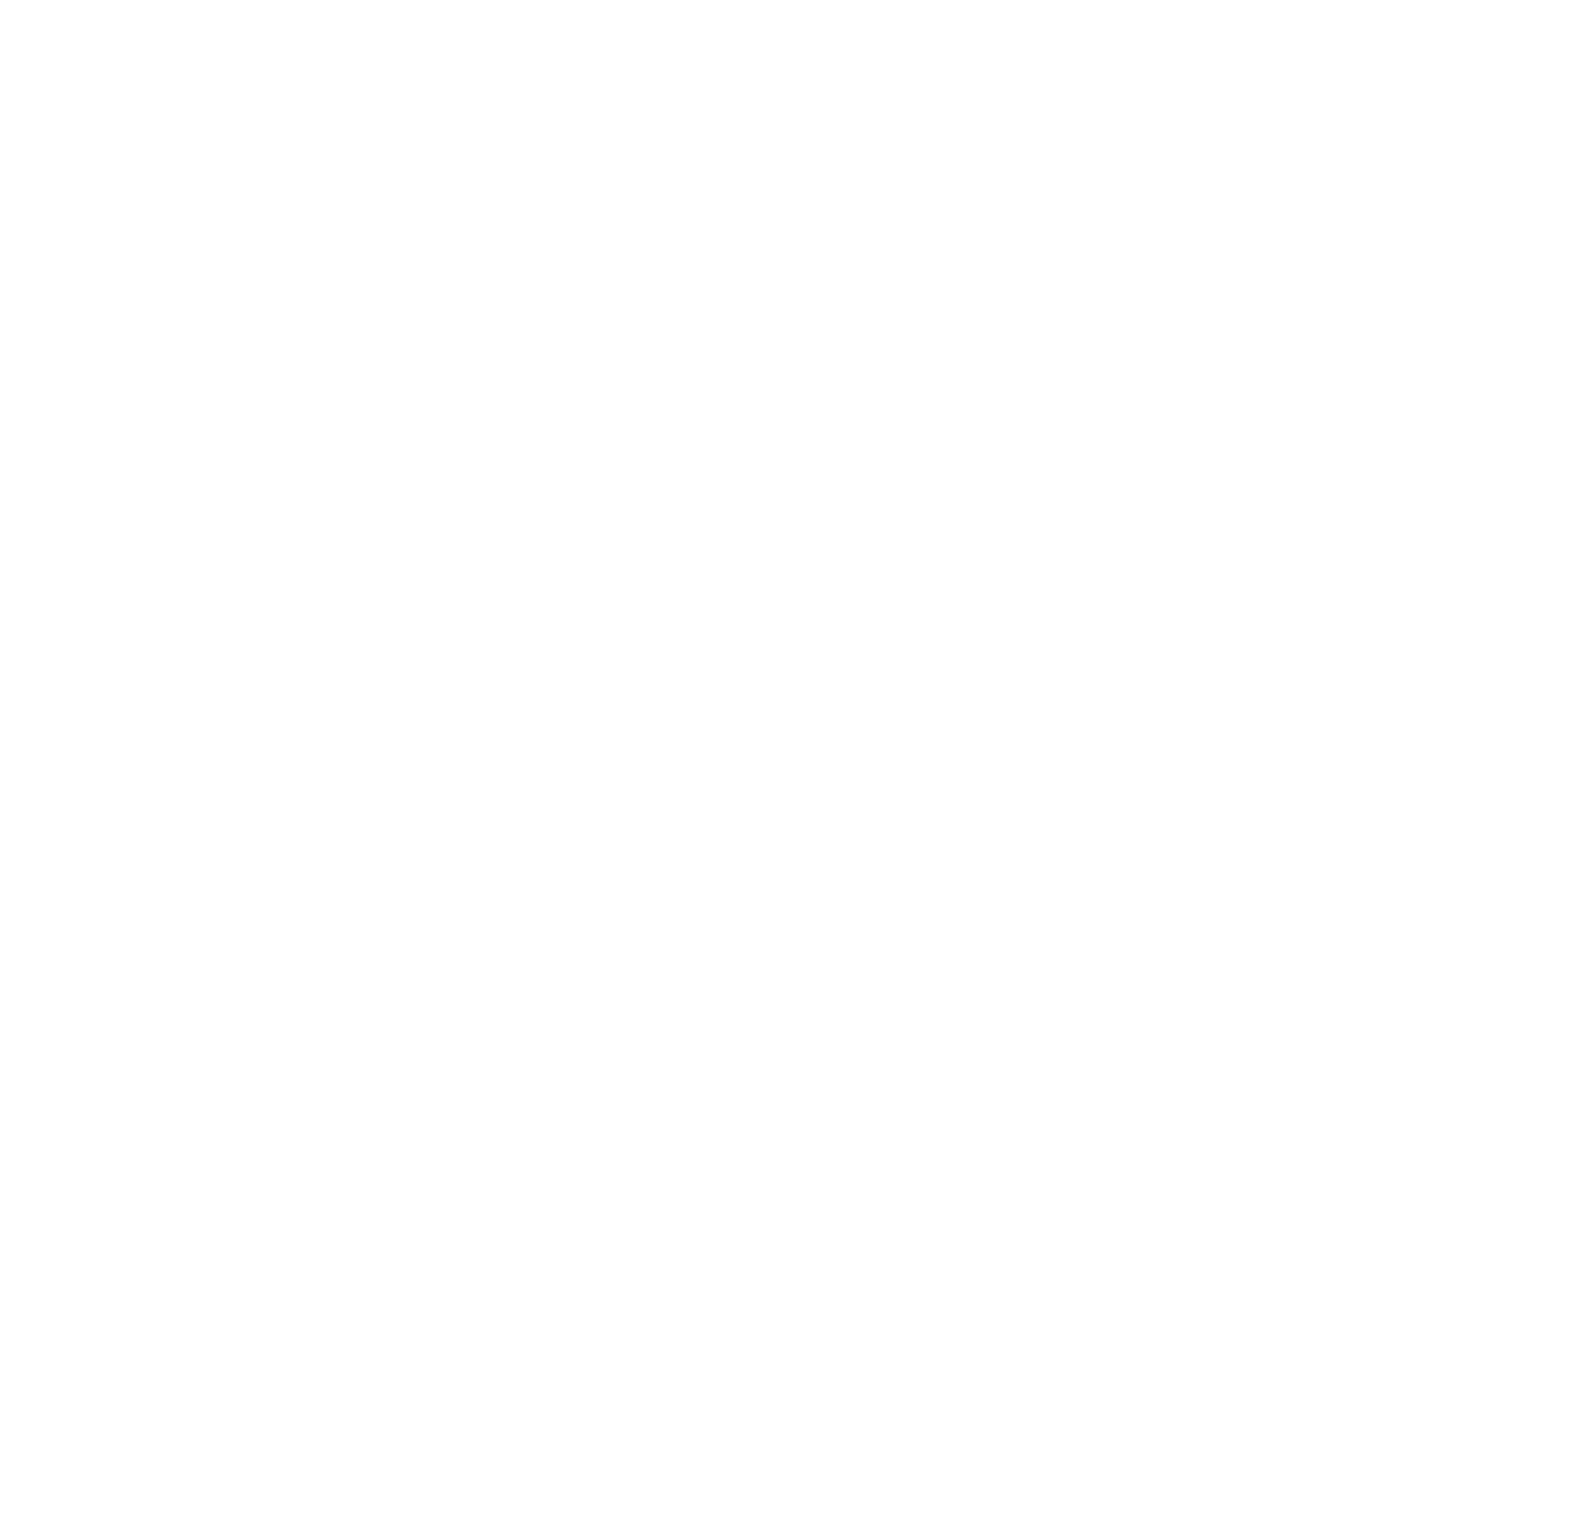 ON24 logo for dark backgrounds (transparent PNG)